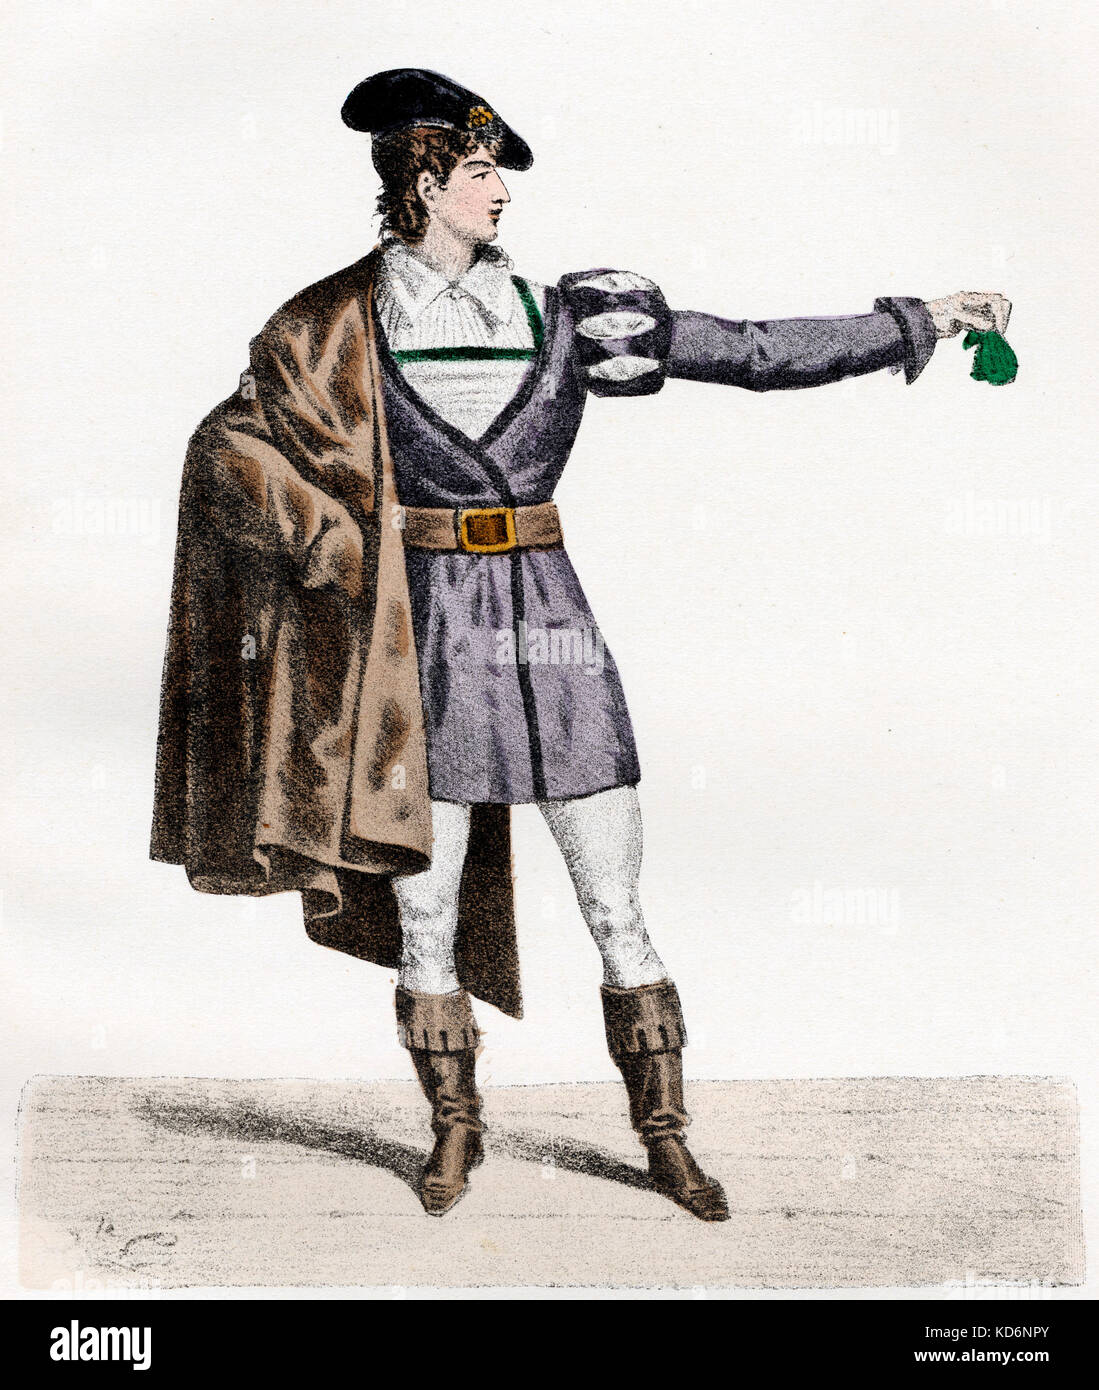 Pierre Jean Baptiste François Elleviou, nel ruolo di "Jean de Paris' / Giovanni di Parigi, opera con lo stesso nome da Adrien Boieldieu. Cantante francese, attore e compositore 1769-1842 Foto Stock